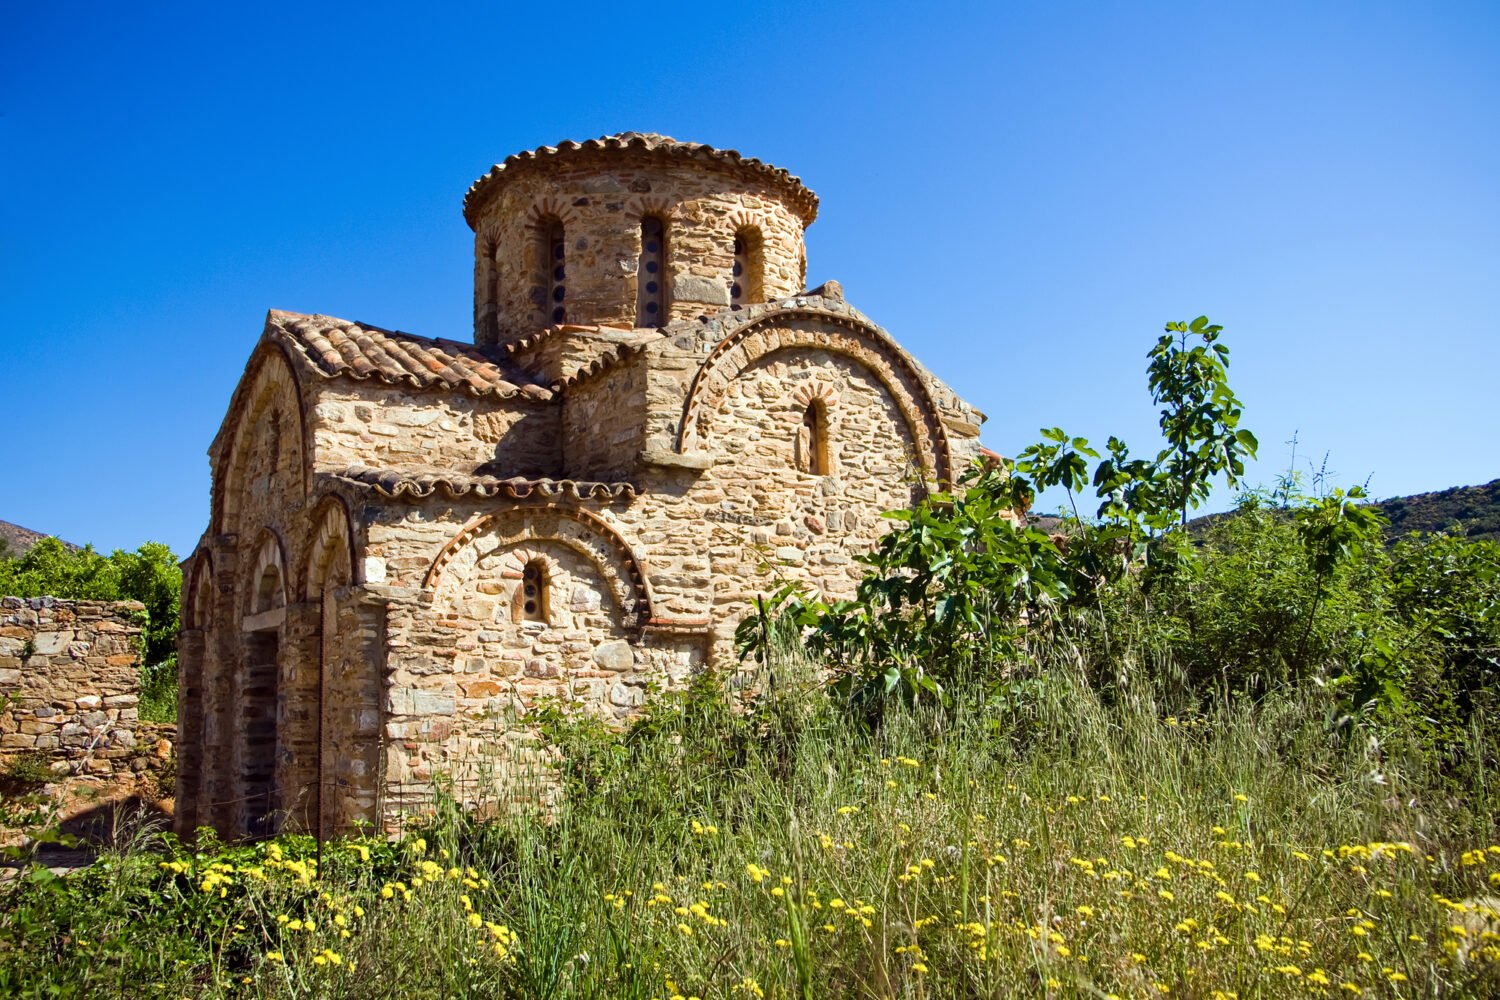 Byzantine church in Fodele